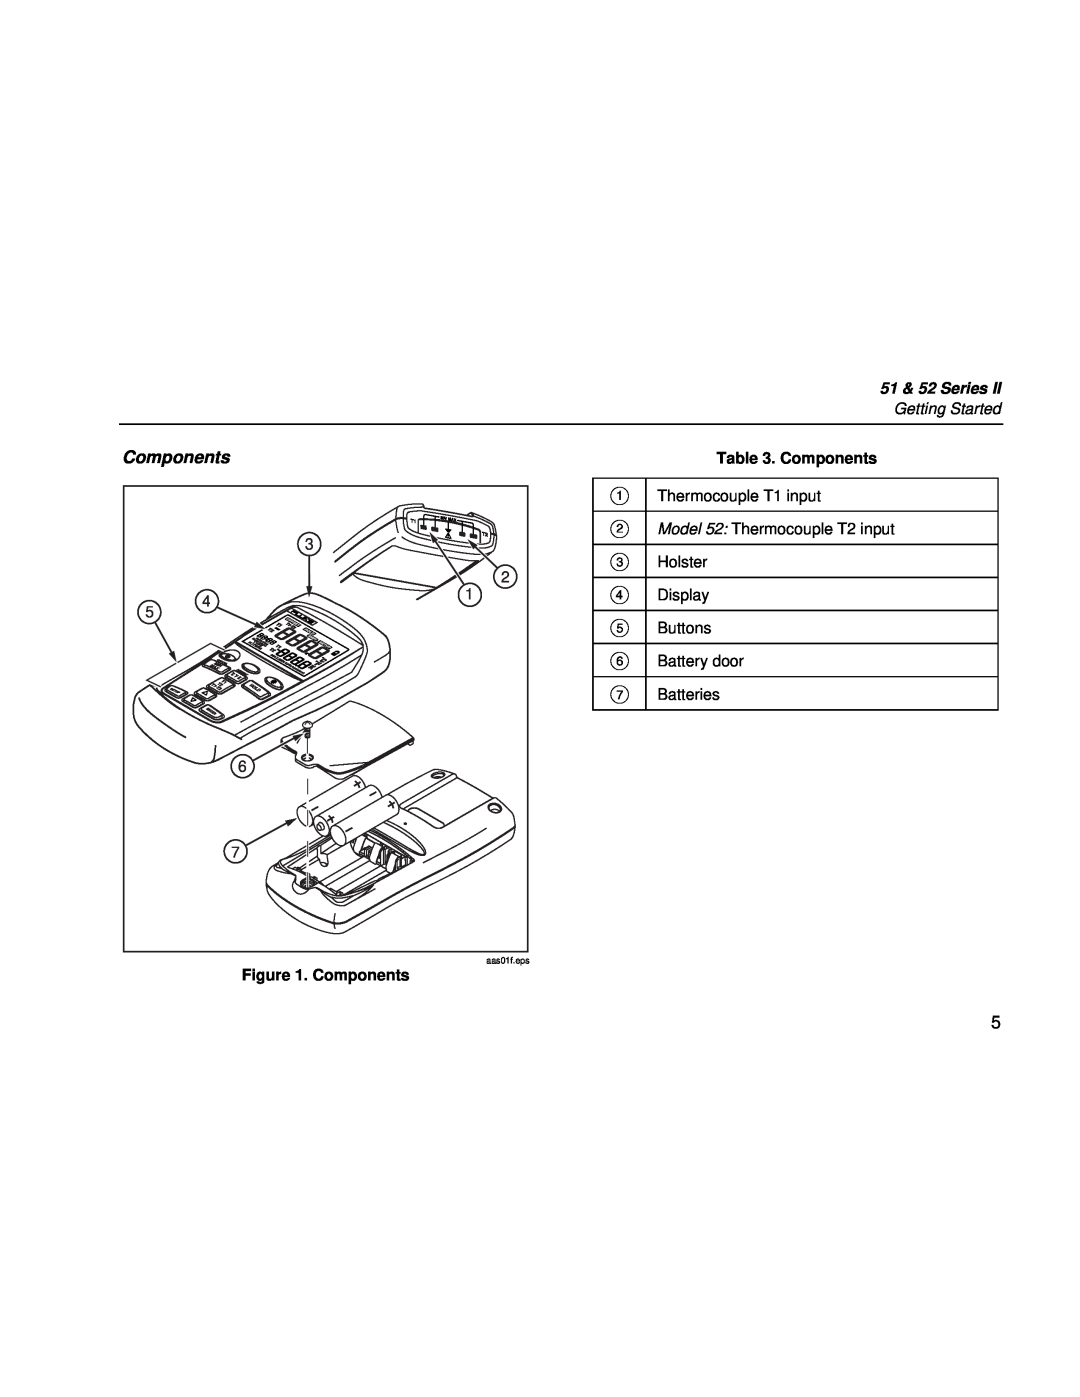 Fluke 51 & 52 Series II user manual Components, A B C D E F G, aas01f.eps 